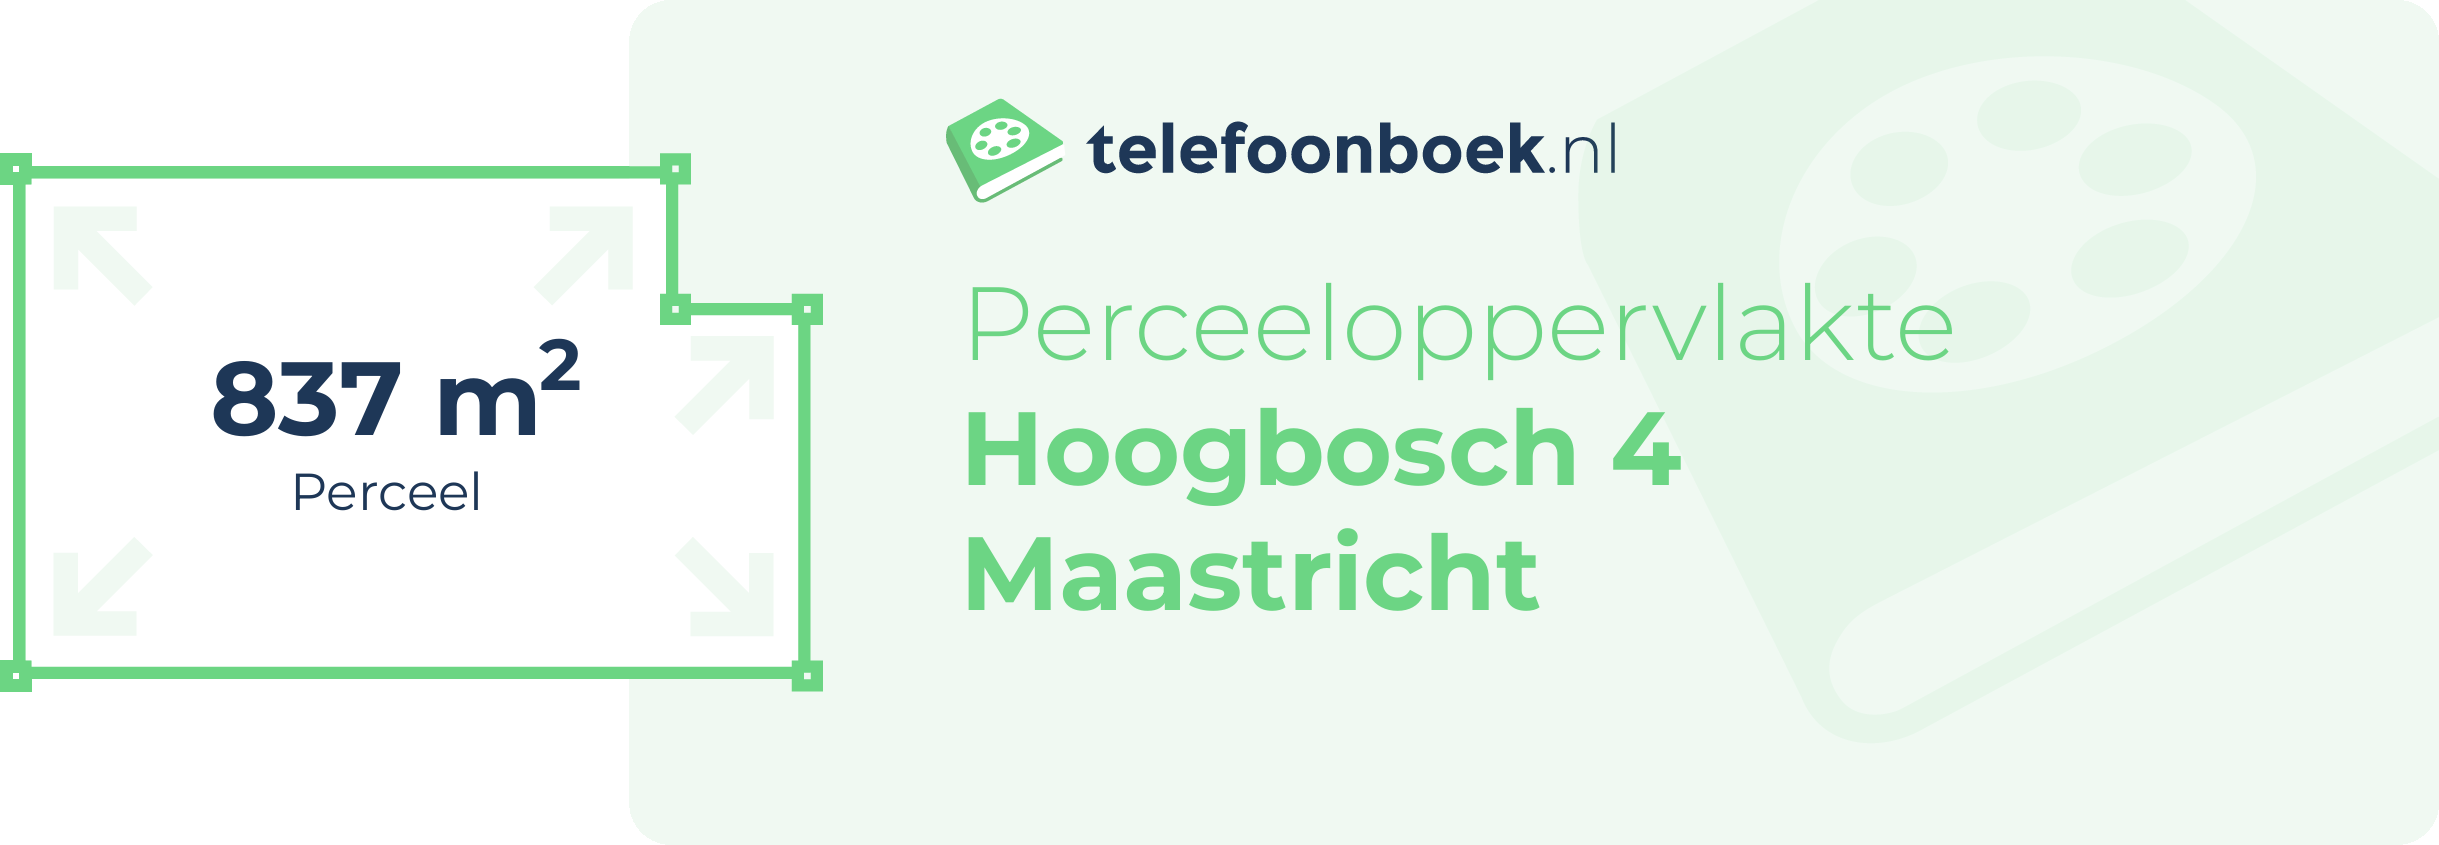 Perceeloppervlakte Hoogbosch 4 Maastricht